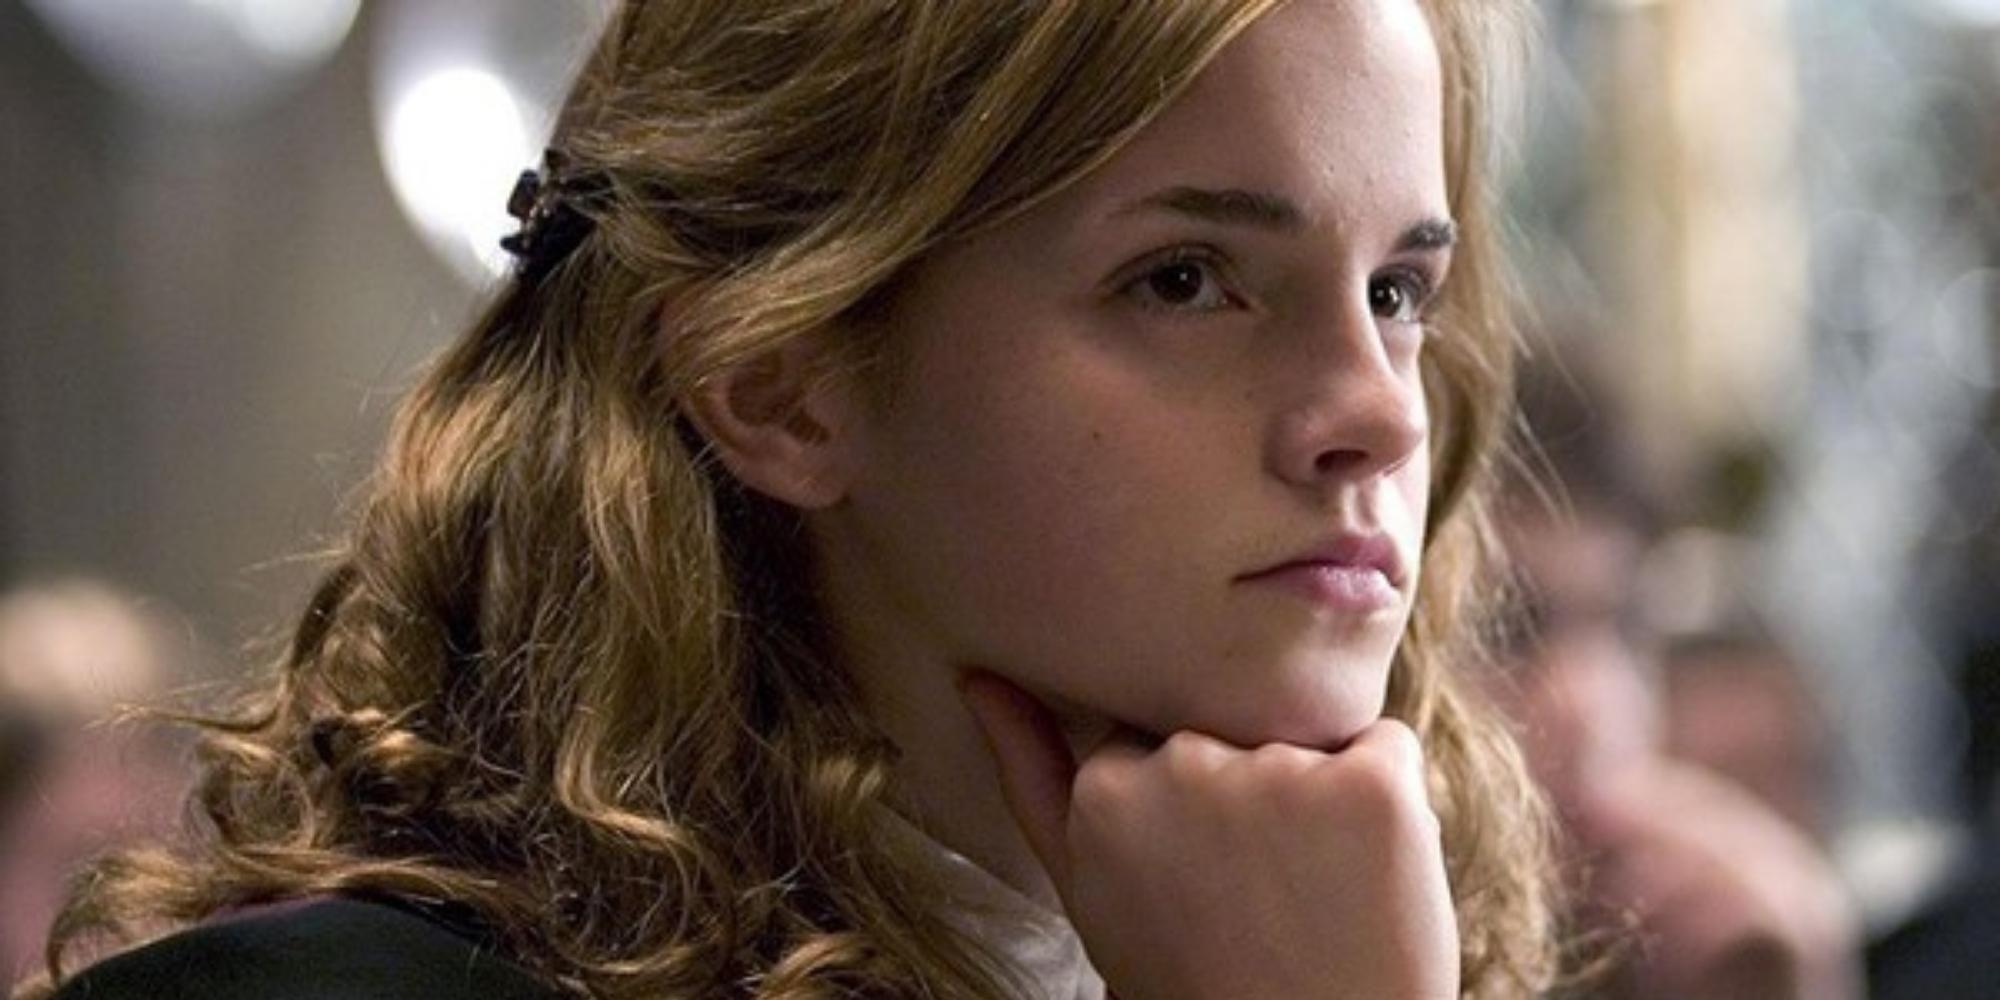 Legado de Hogwarts: dicas para interpretar como Hermione Granger